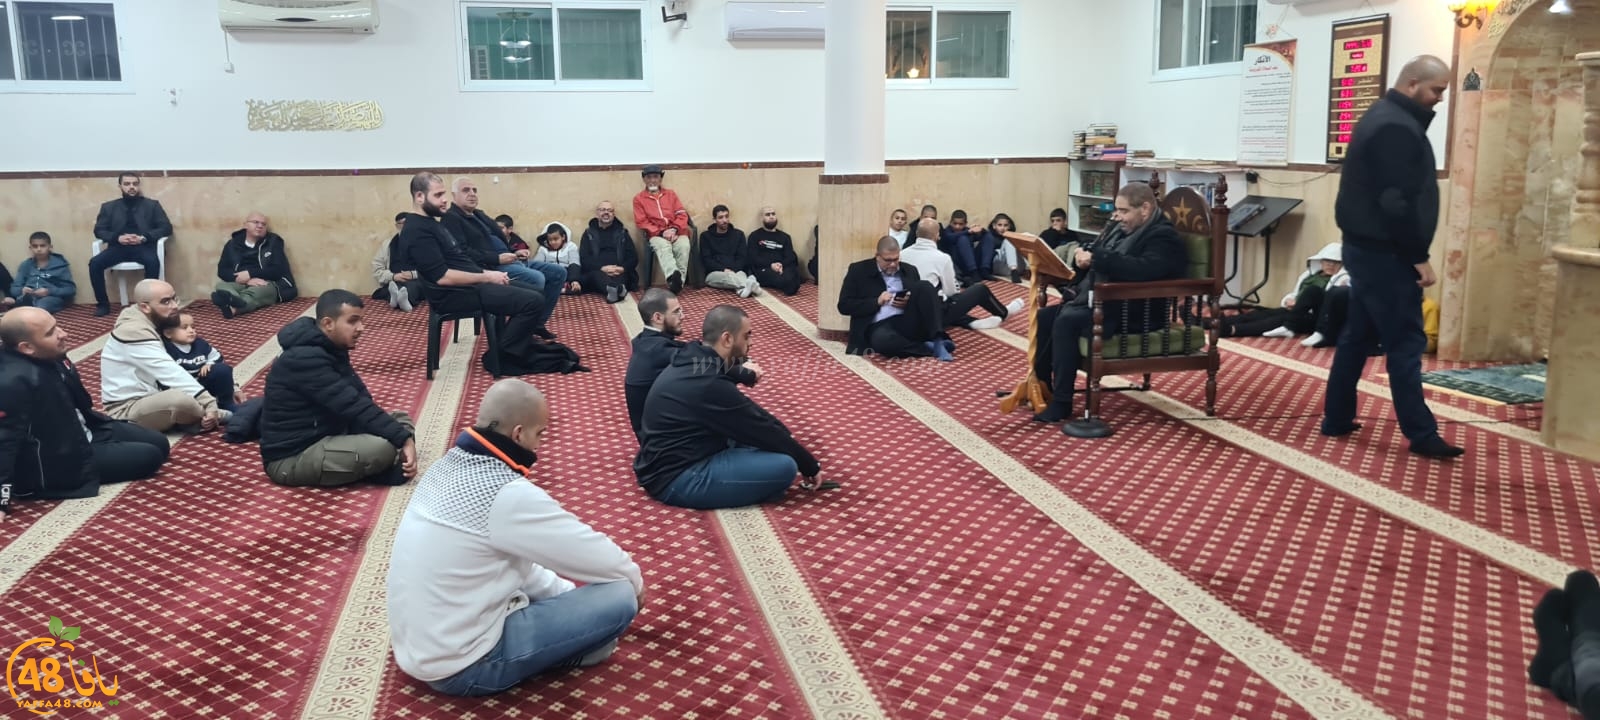 يافا: الشيخ وائل محاميد يحل ضيفا على مجالس النور في مسجد العجمي